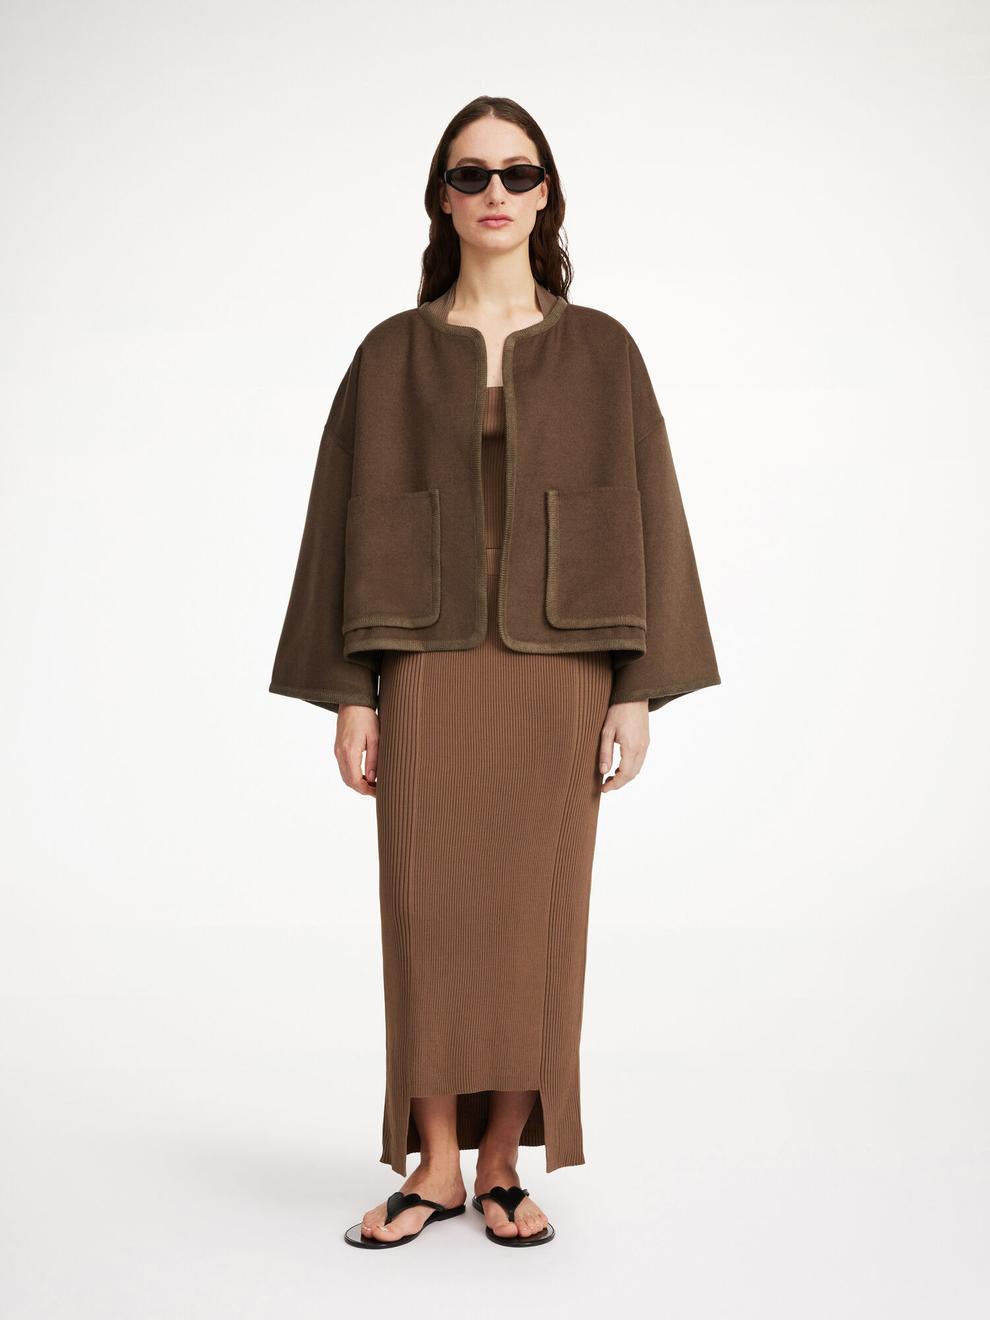 Jacquie wool jacket för 7800 kr på By Malene Birger